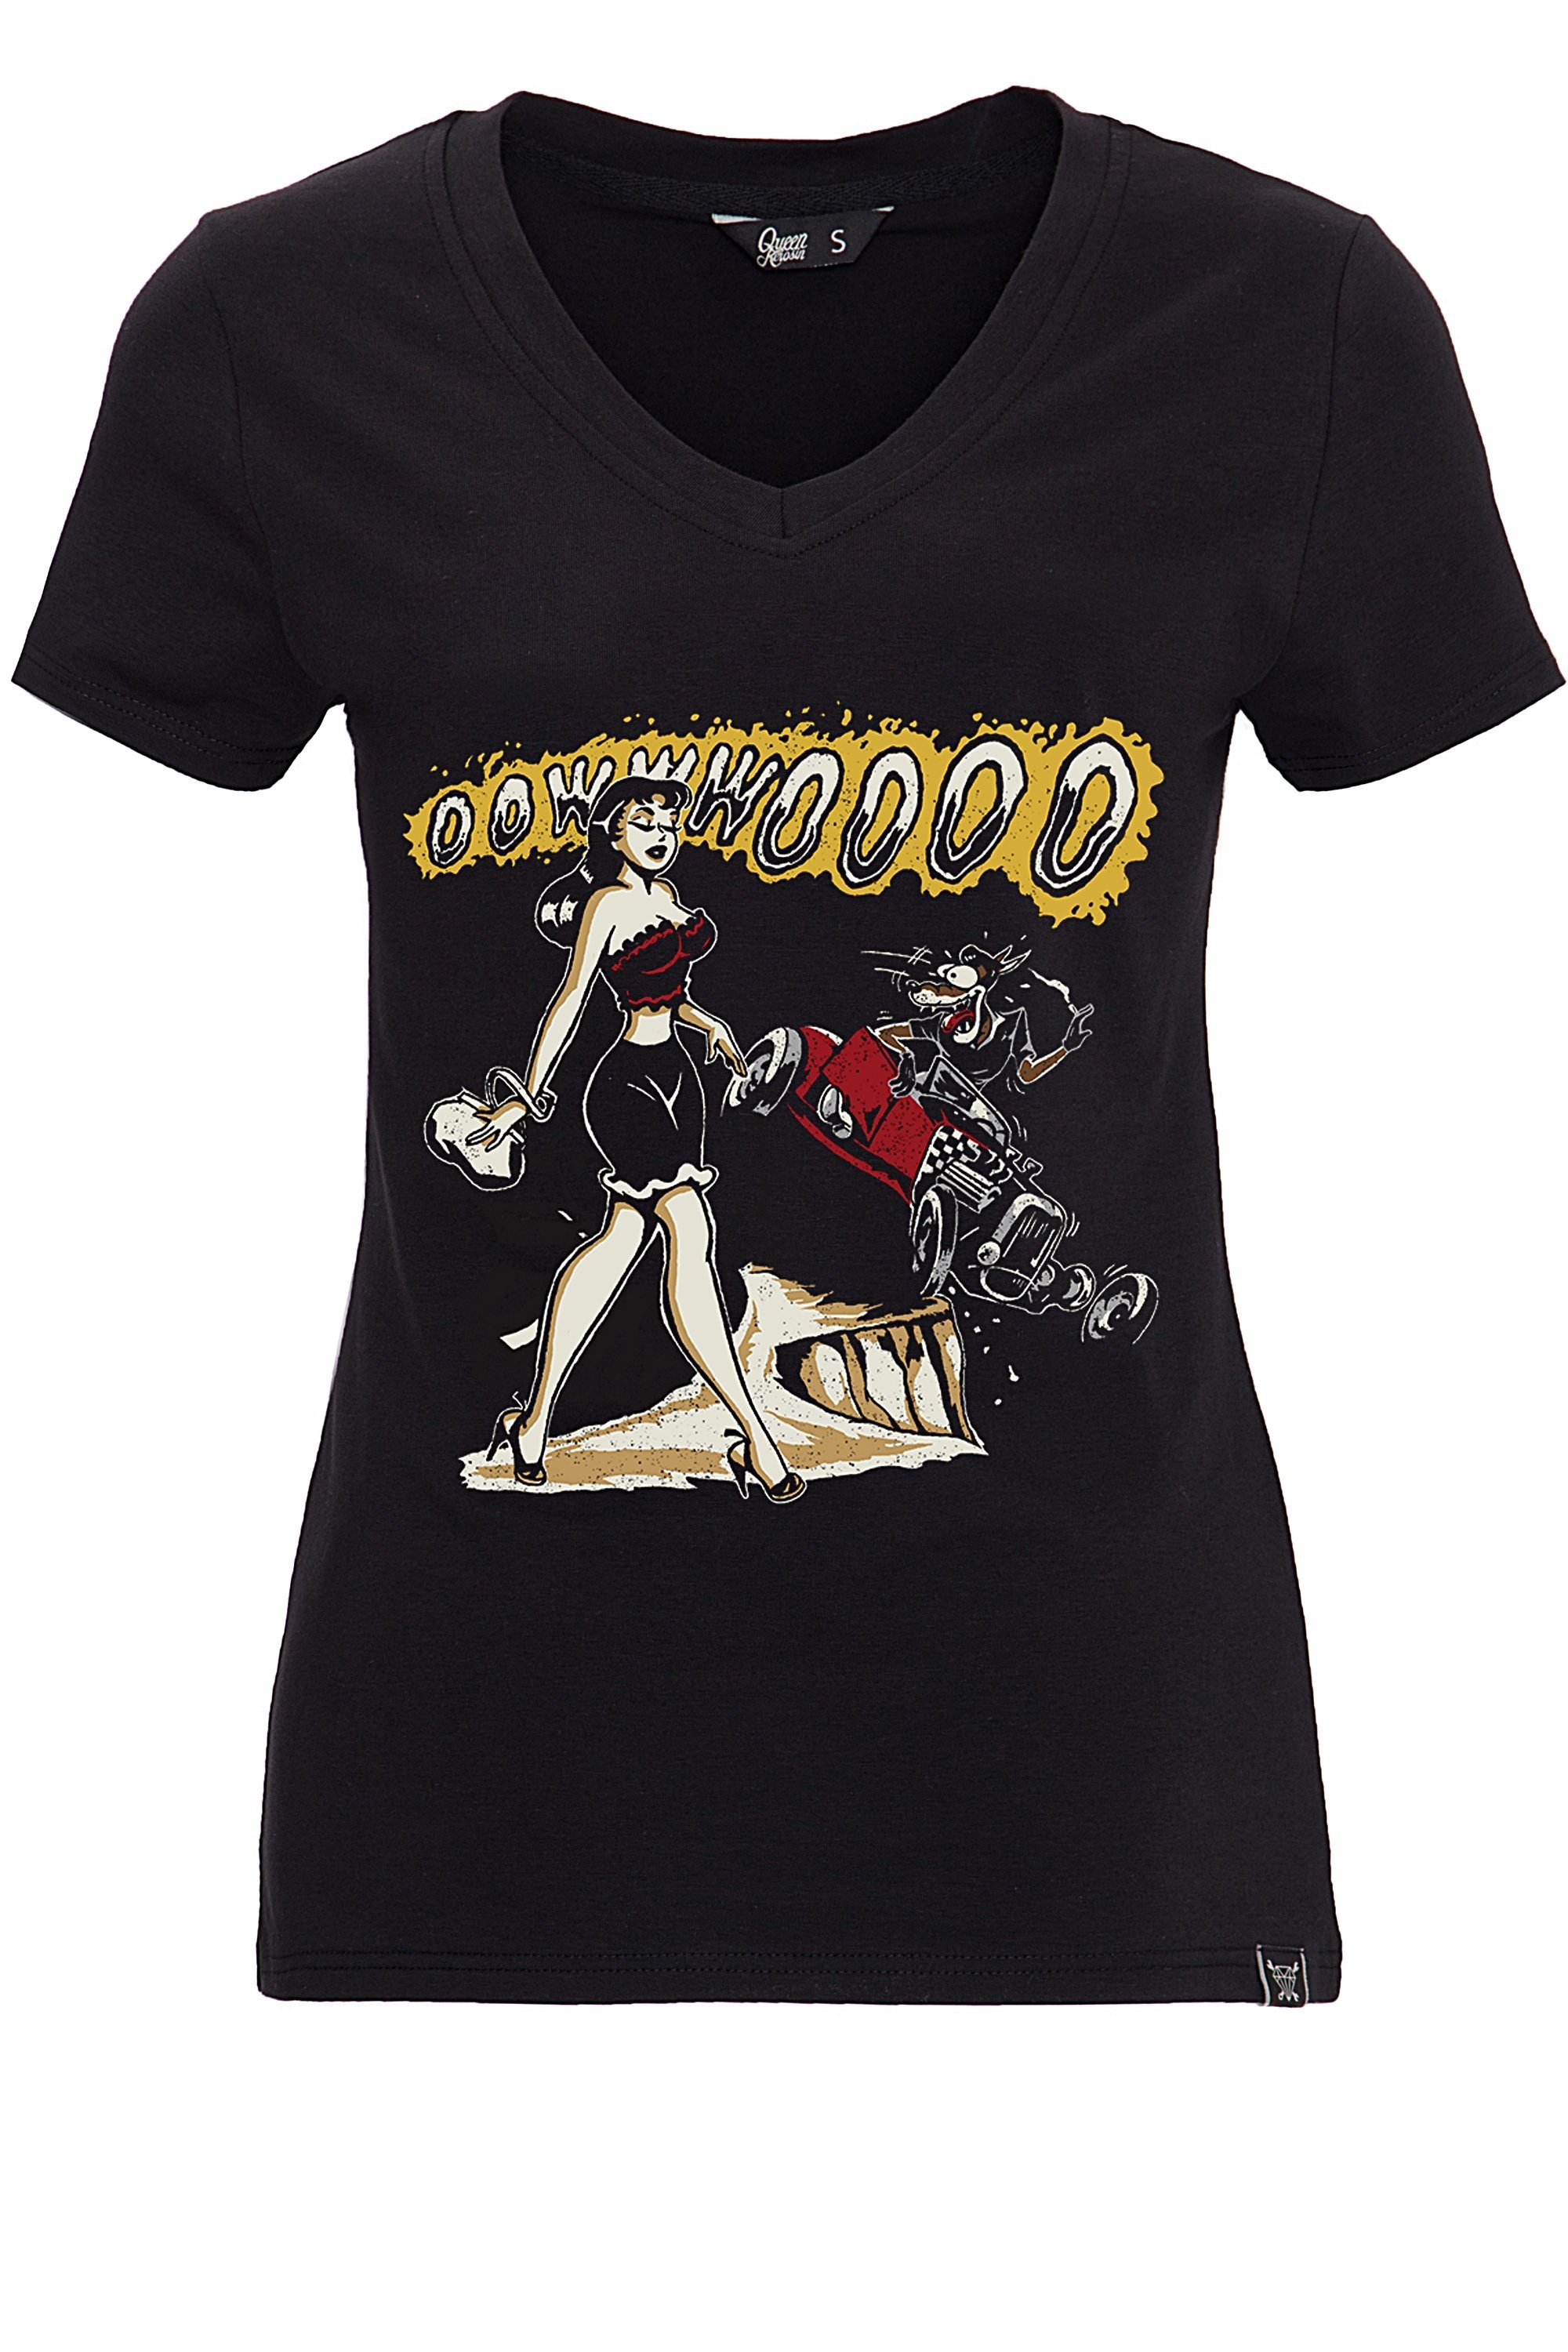 QueenKerosin T-Shirt Oowwwoooo mit Frontprint und V-Ausschnitt schwarz